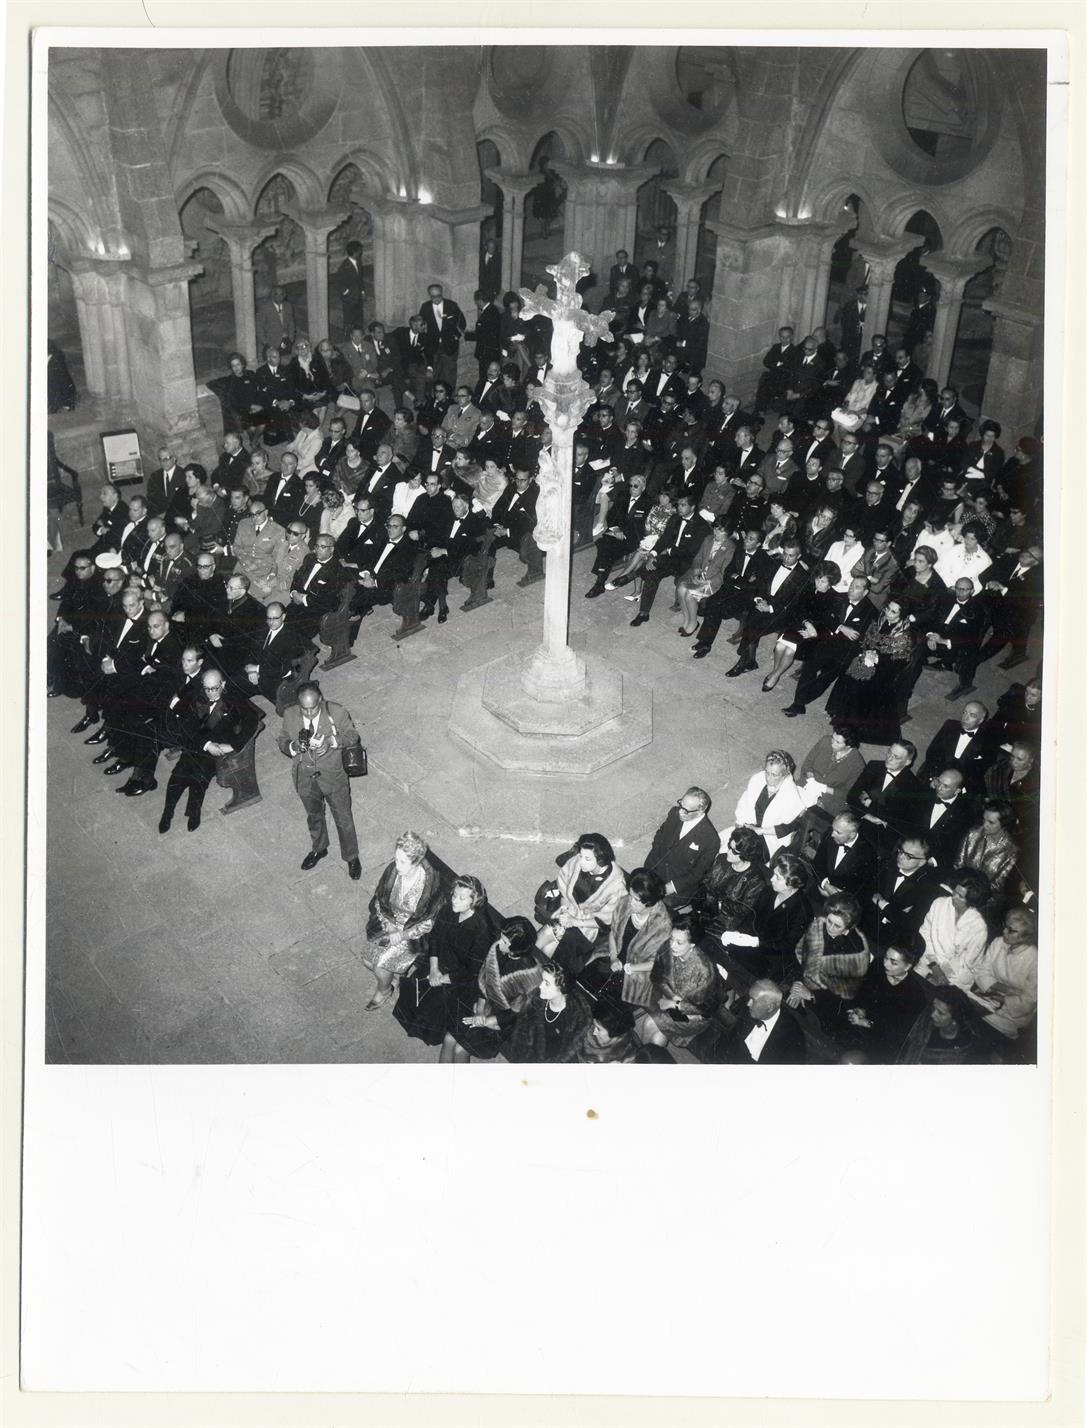 IX centenário da presúria de Portucale por Vímara Peres em 868 : inauguração oficial das comemorações, na igreja da Sé